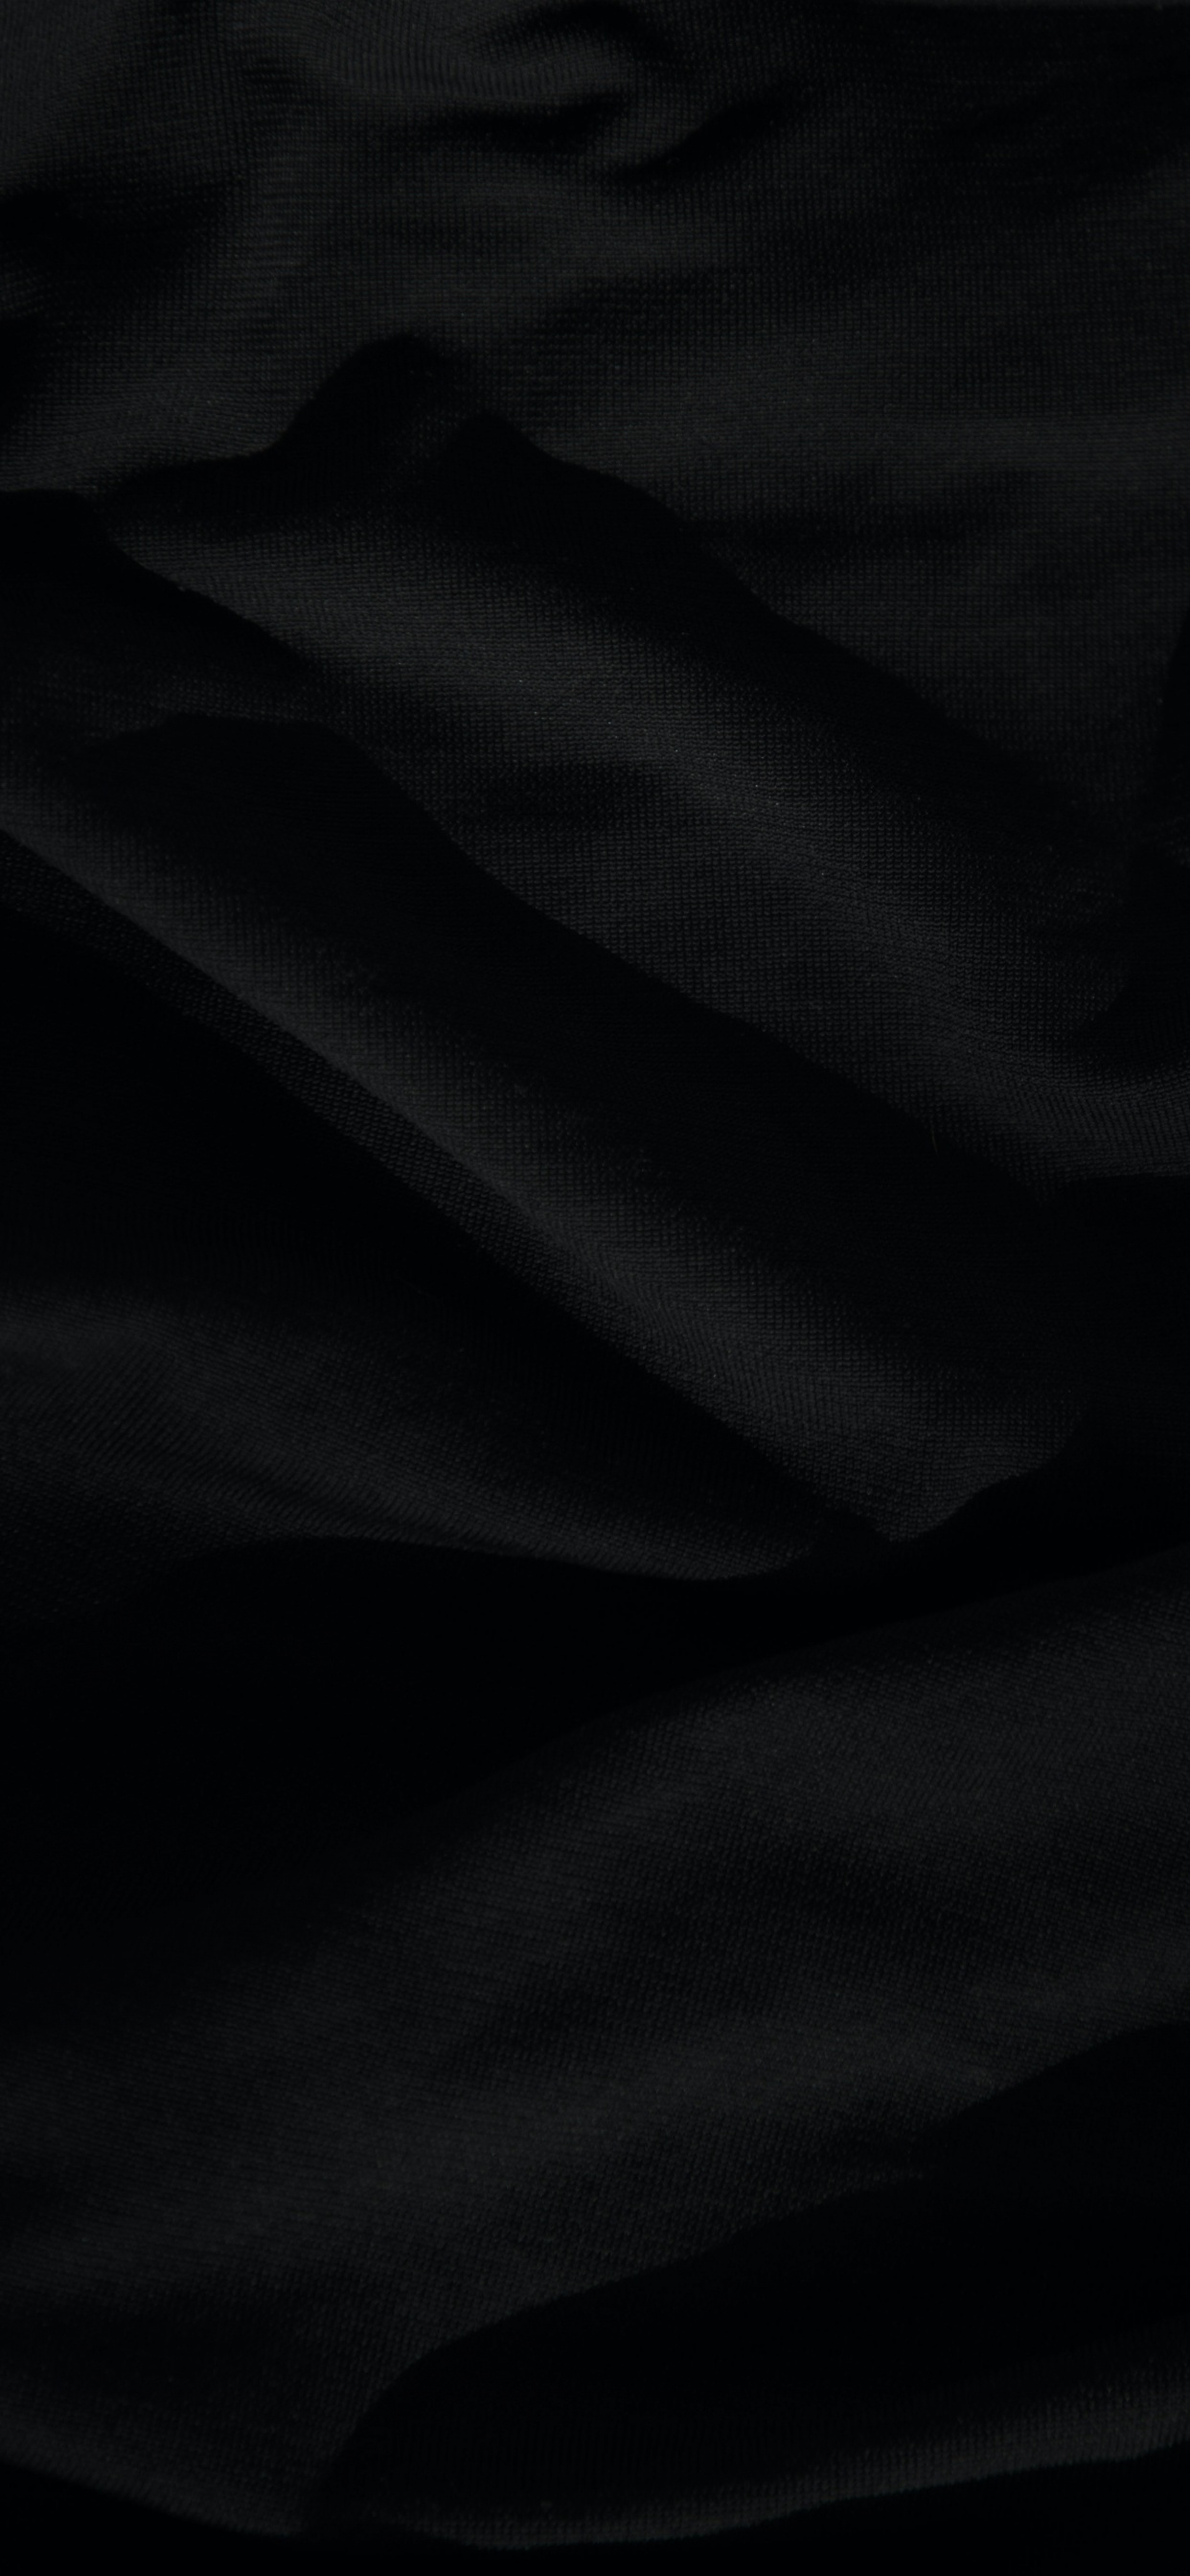 44 Black Wallpaper for iPhone 6  WallpaperSafari